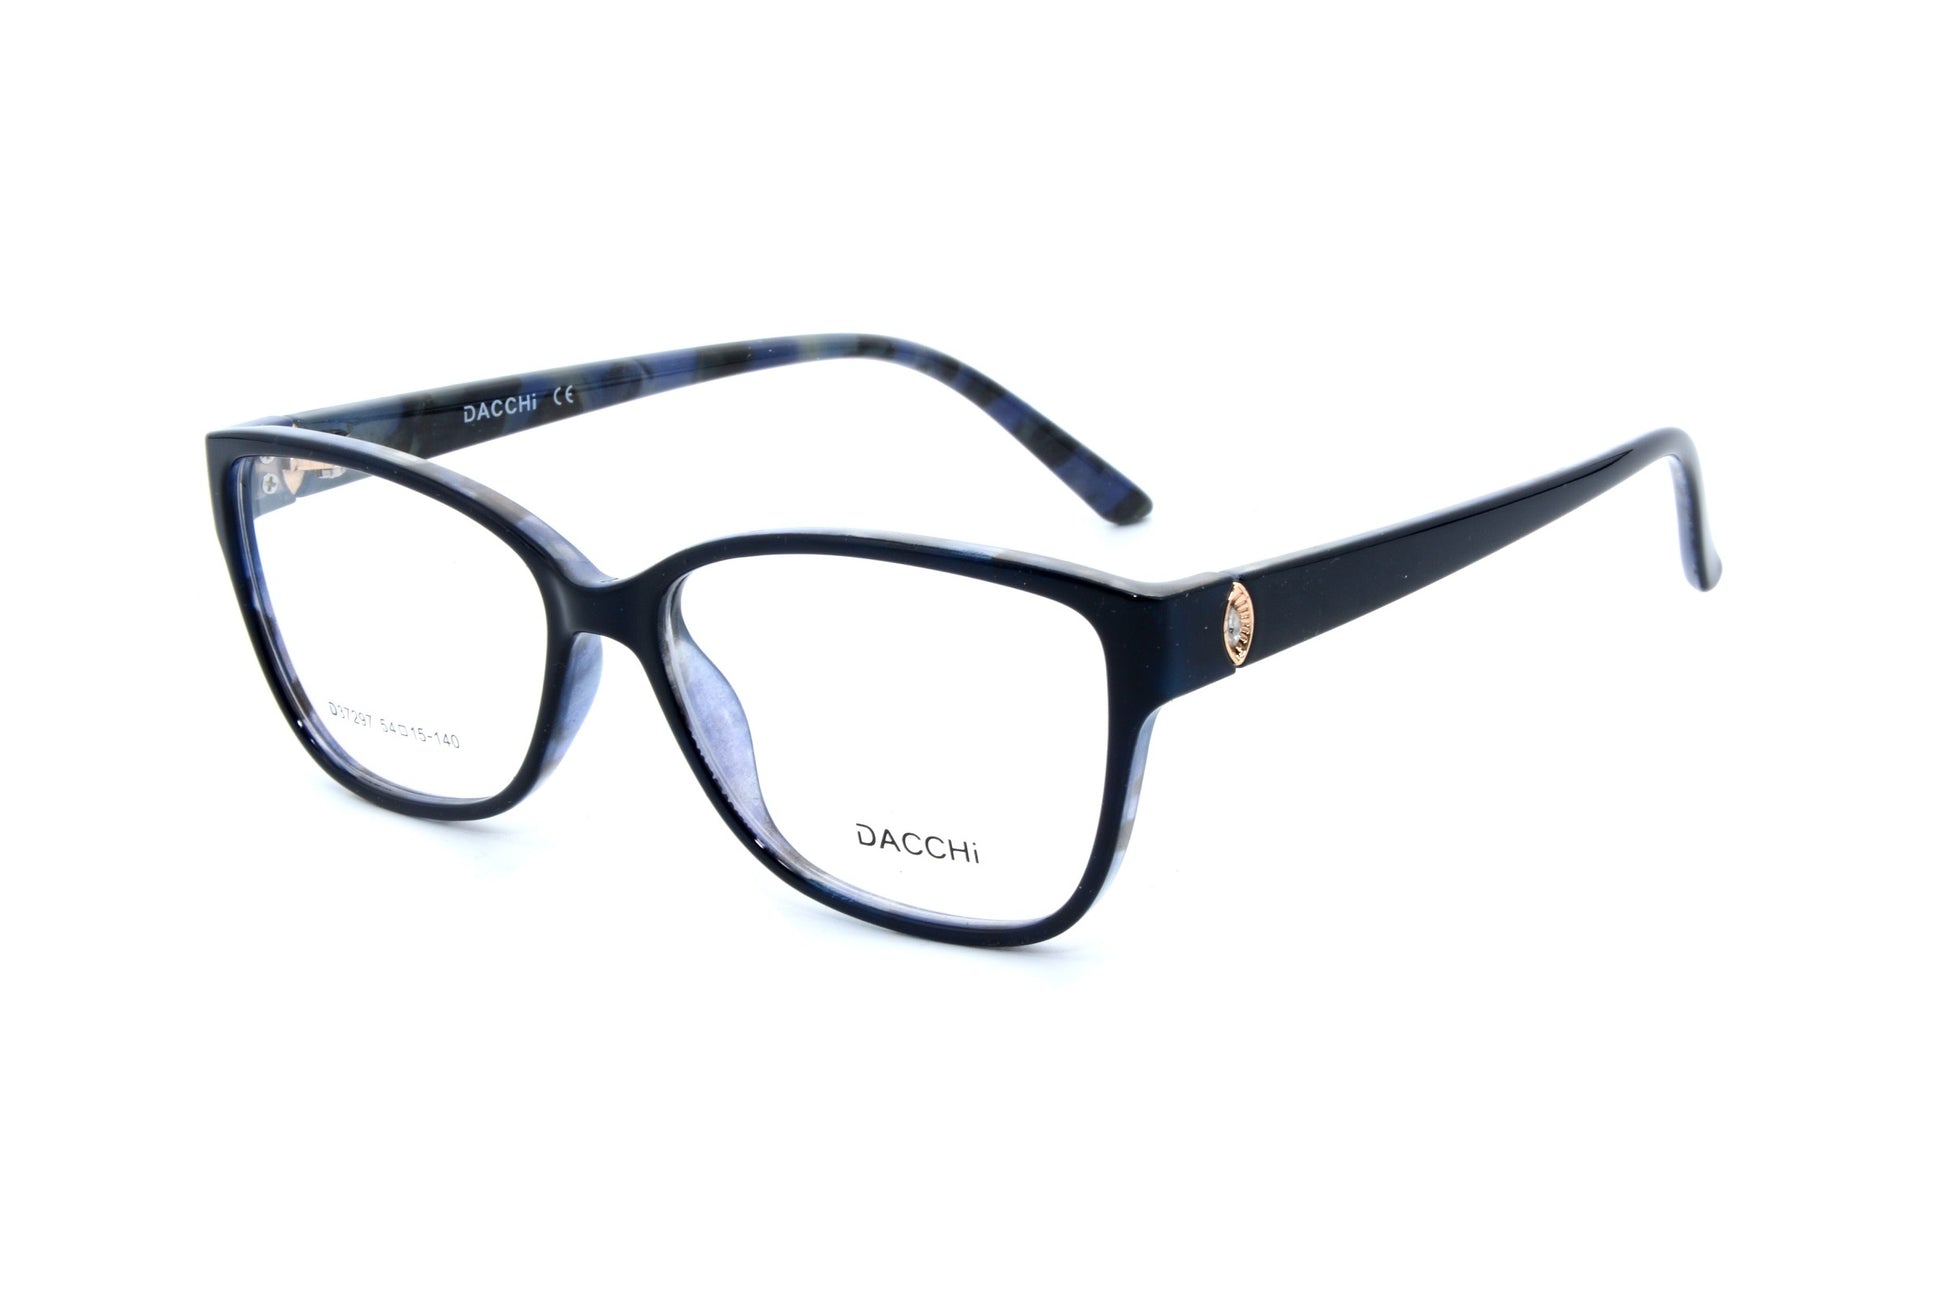 Dacchi eyewear 37297, C3 - Optics Trading